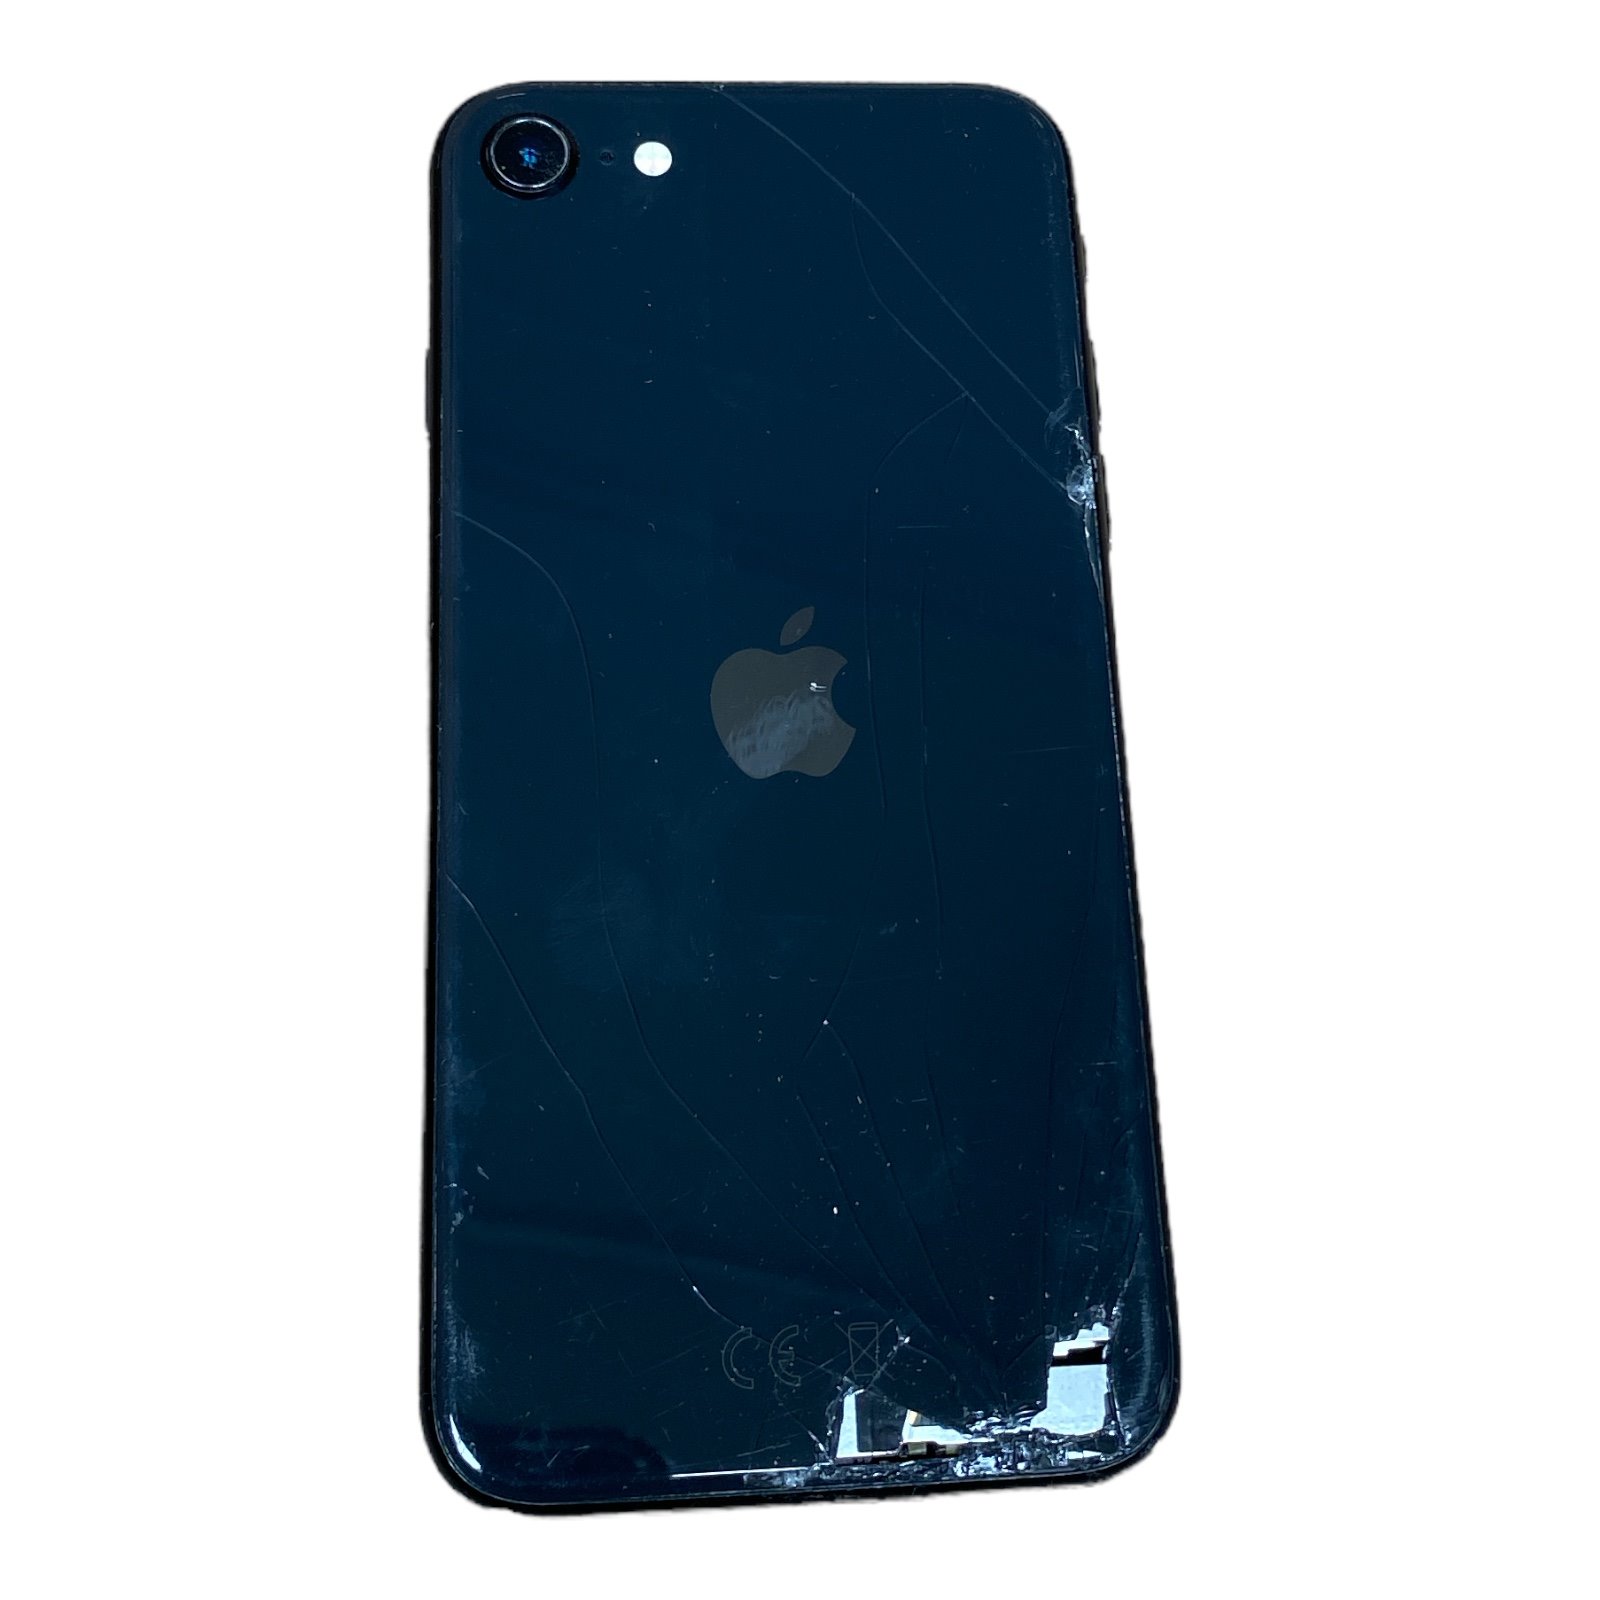 Apple iPhone SE (2nd Gen) Glasbruch C- Ware 256GB Smartphone ohne Ladegerät